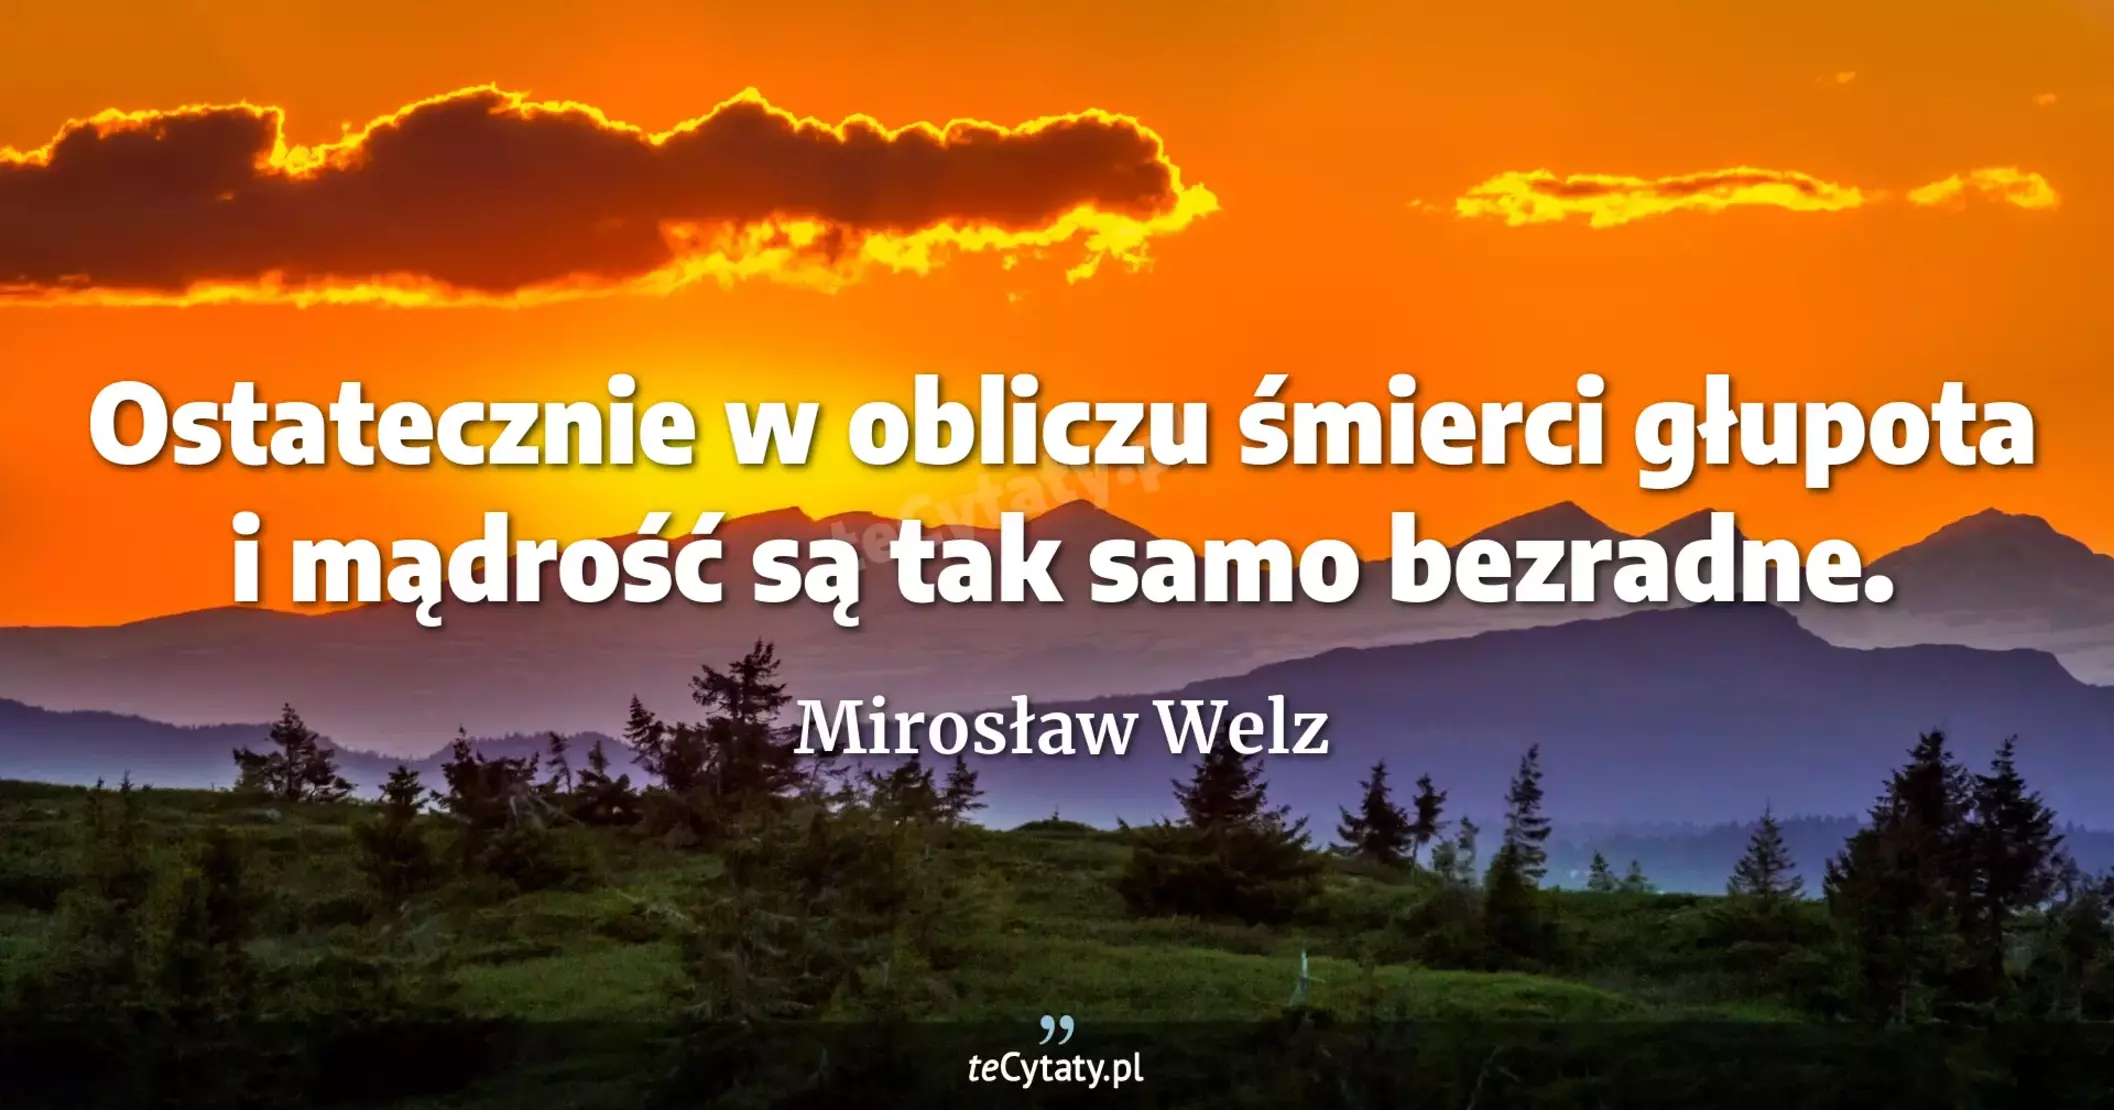 Ostatecznie w obliczu śmierci głupota i mądrość są tak samo bezradne. - Mirosław Welz